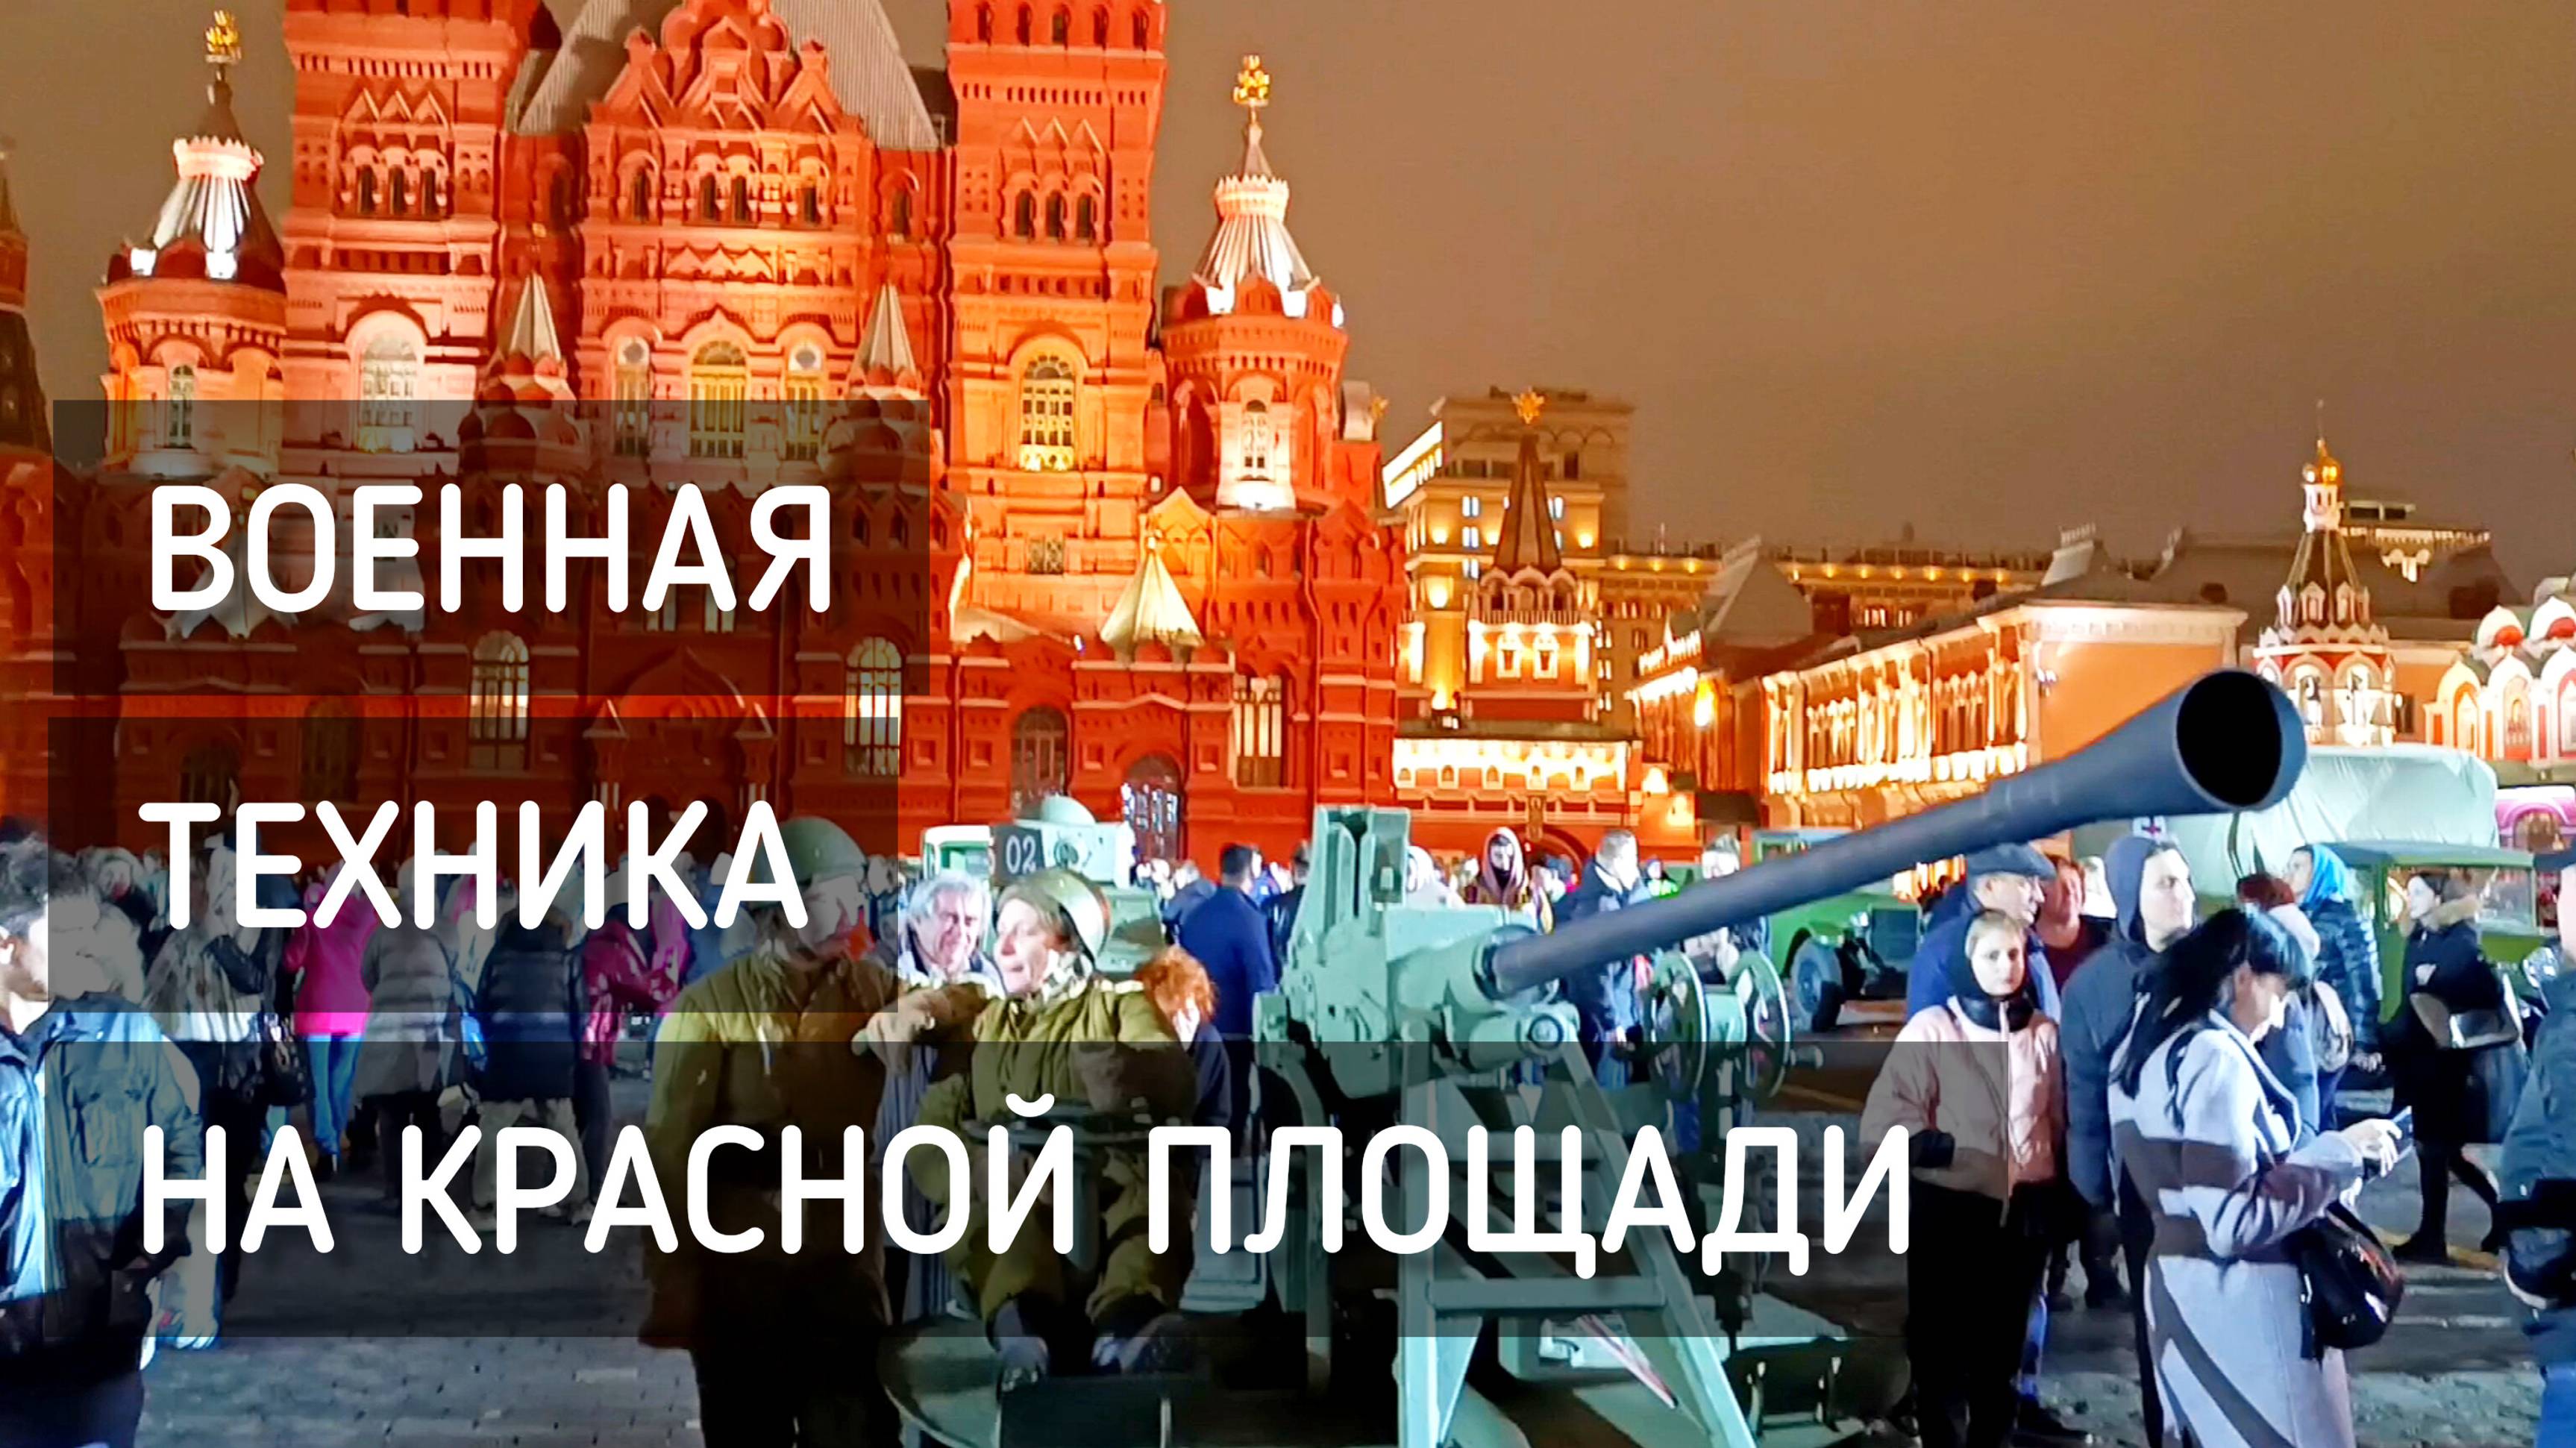 Военная техника и толпы на Красной площади / Military equipment #москва #музей #танк #краснаяплощадь